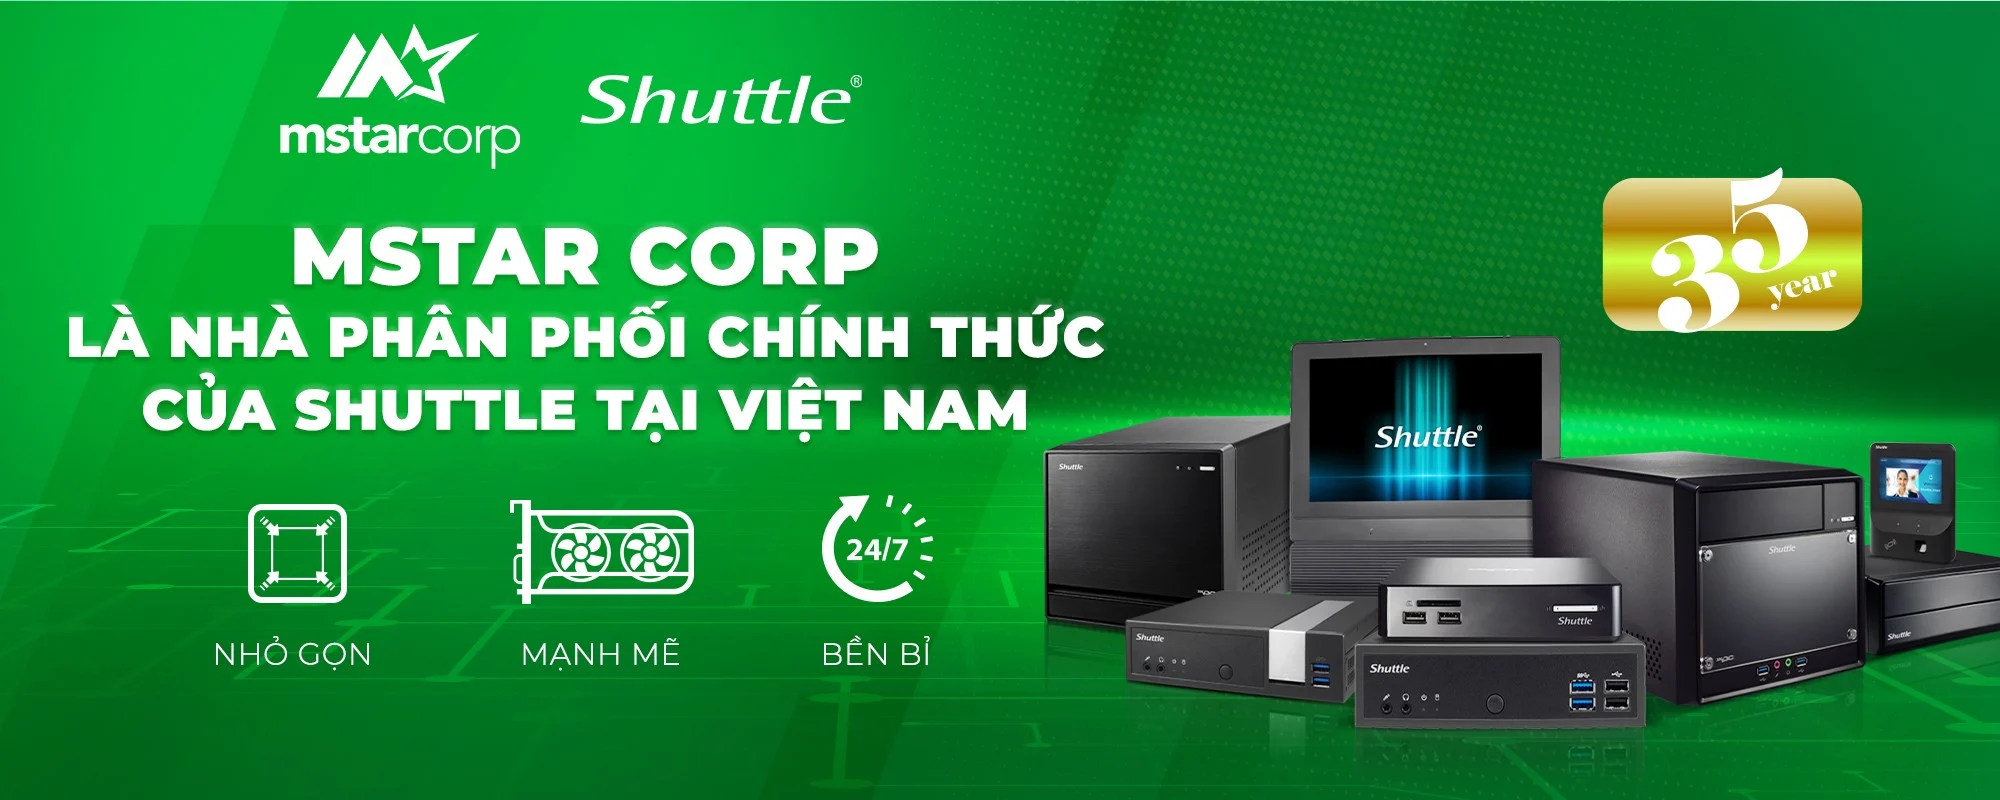 Mstar Corp - Nhà phân phối chính thức của Shuttle tìm kiếm đối tác tại Việt Nam